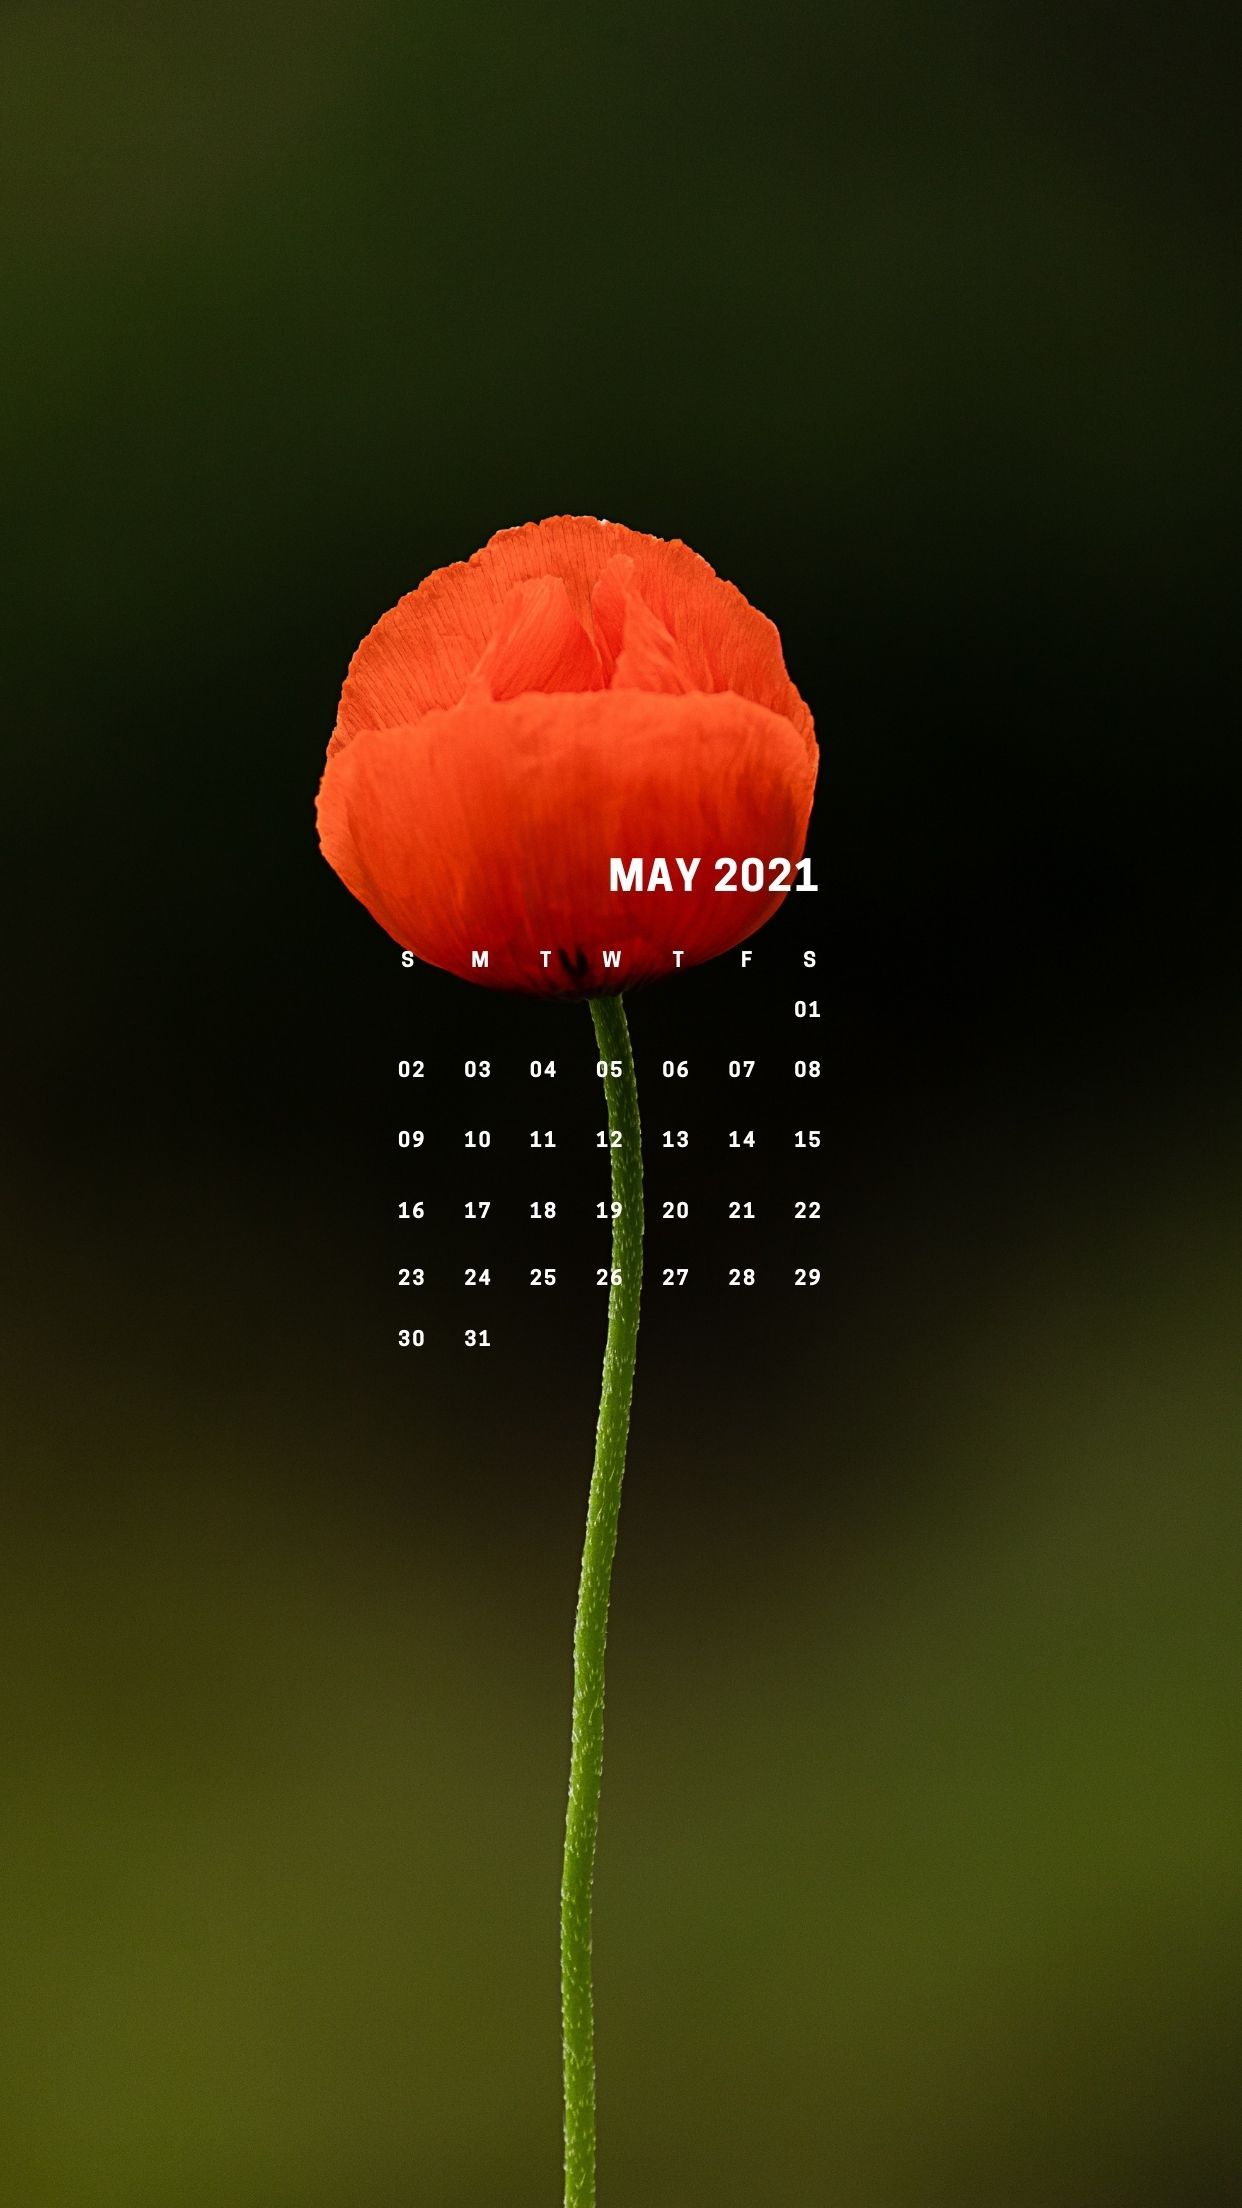 May 2021 Calendar